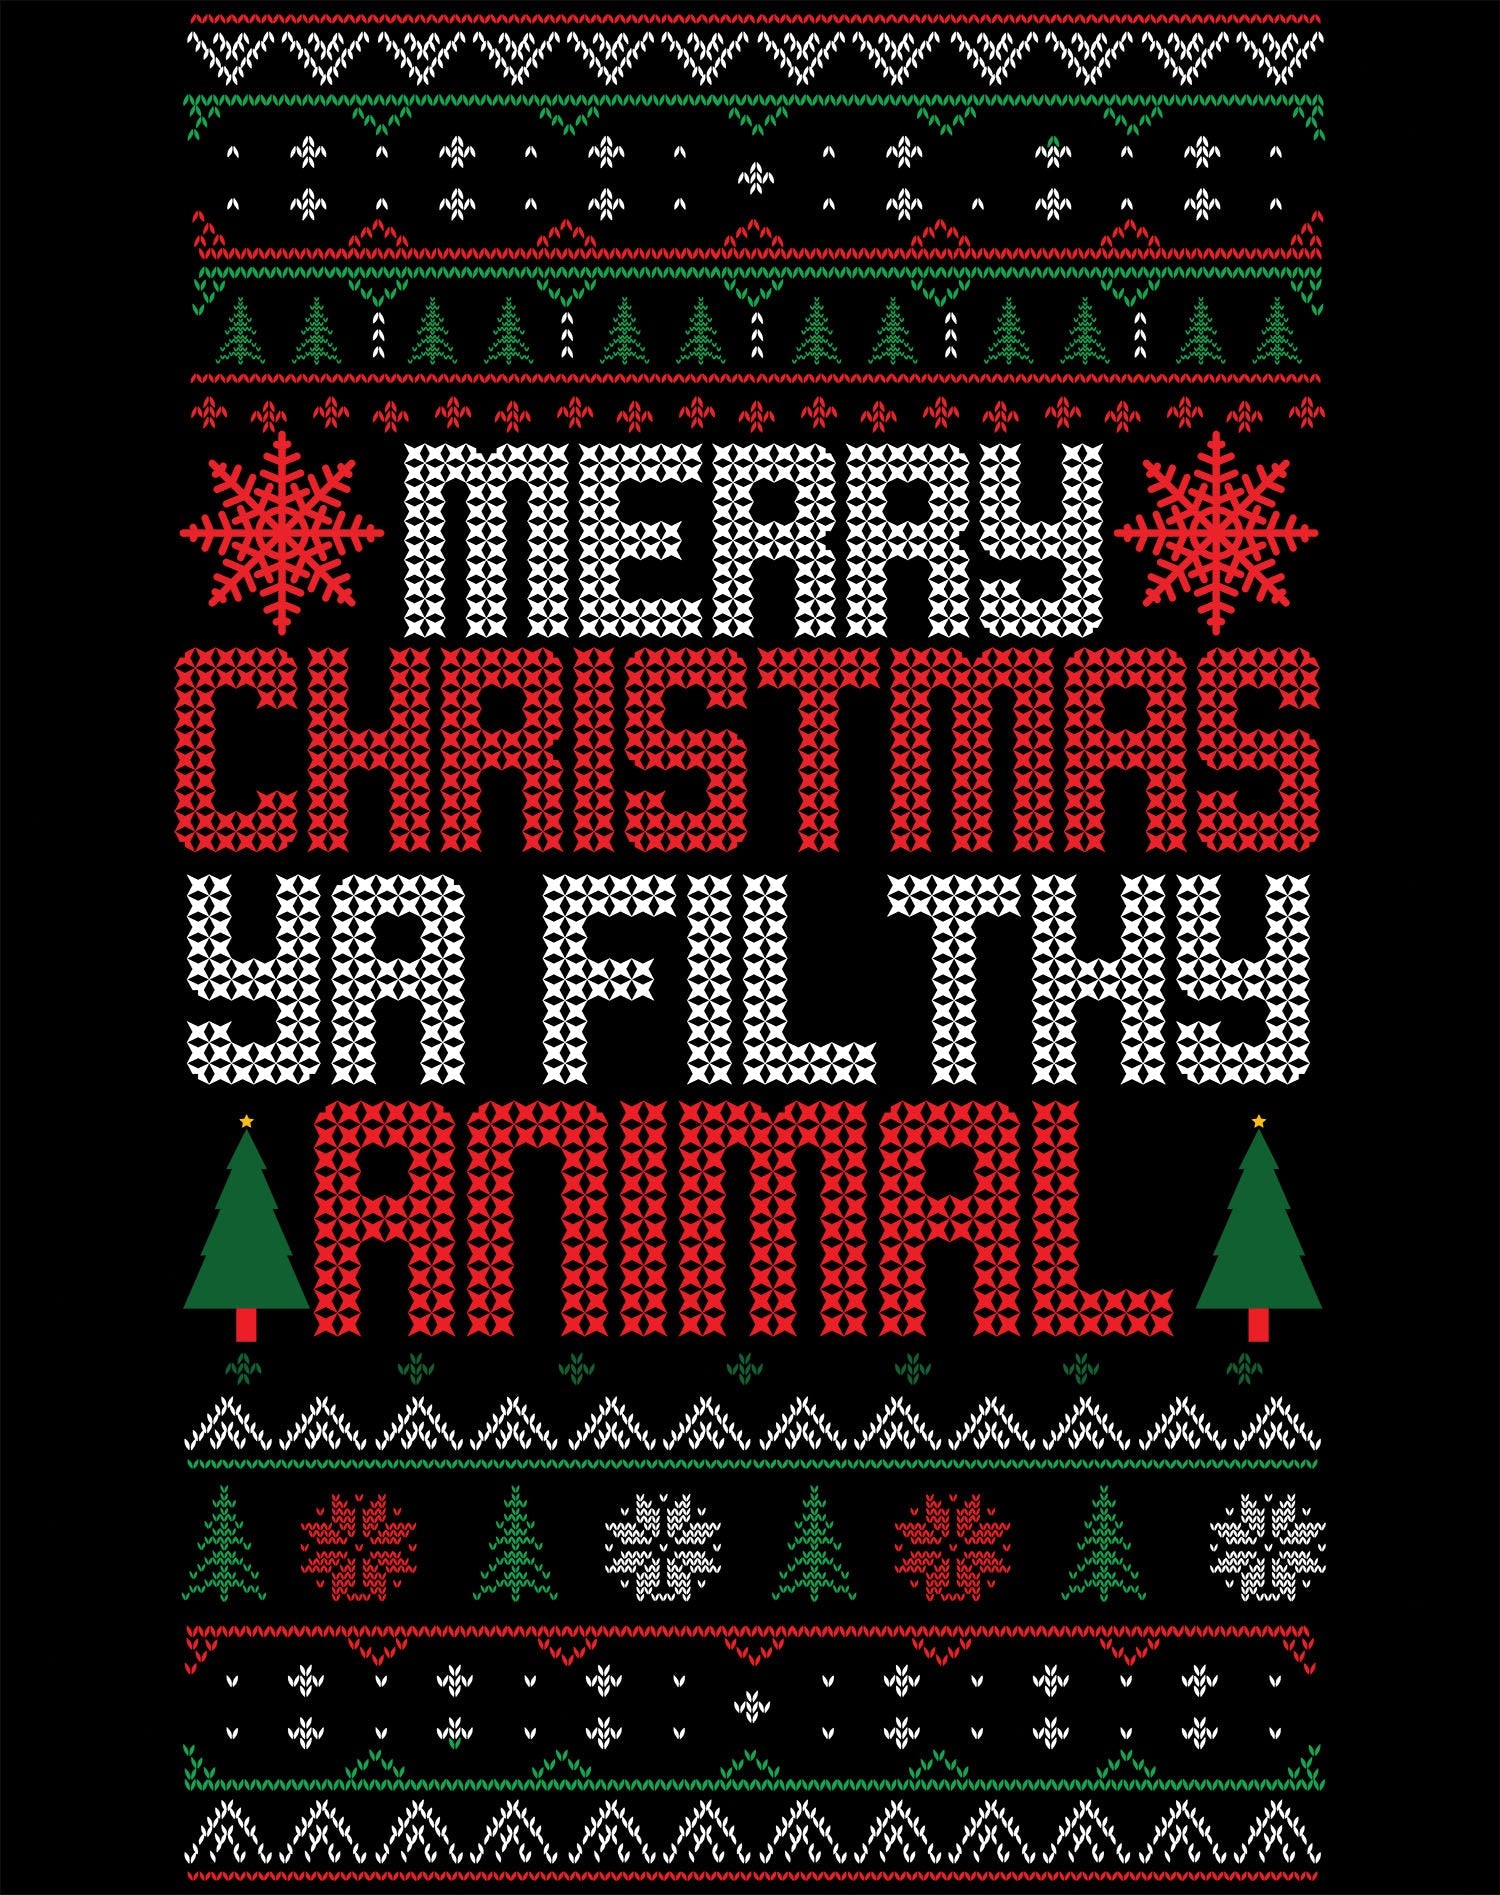 Christmas Merry Xmas Ya Filthy Animal Meme Lol Ugly Xmas Men's T-Shirt